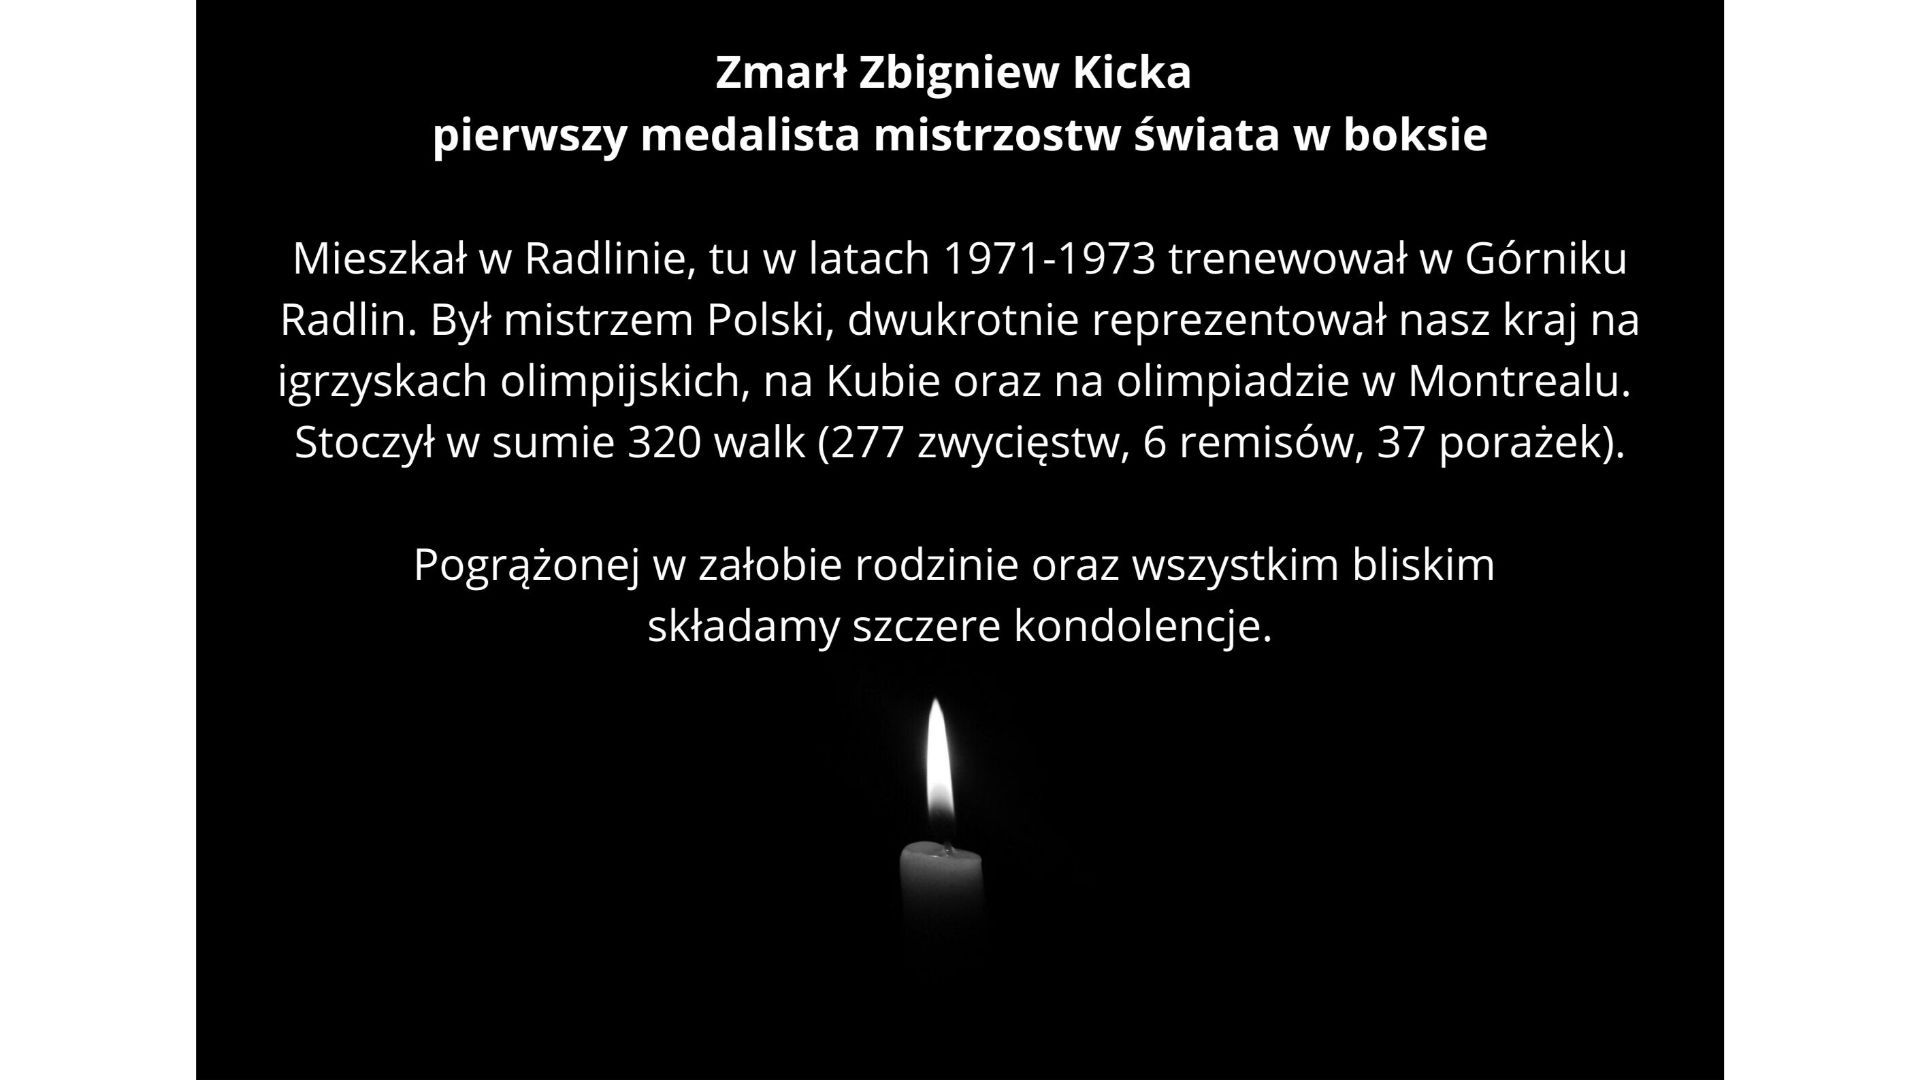 Zmarł Zbigniew Kicka, medalista mistrzostw świata w boksie